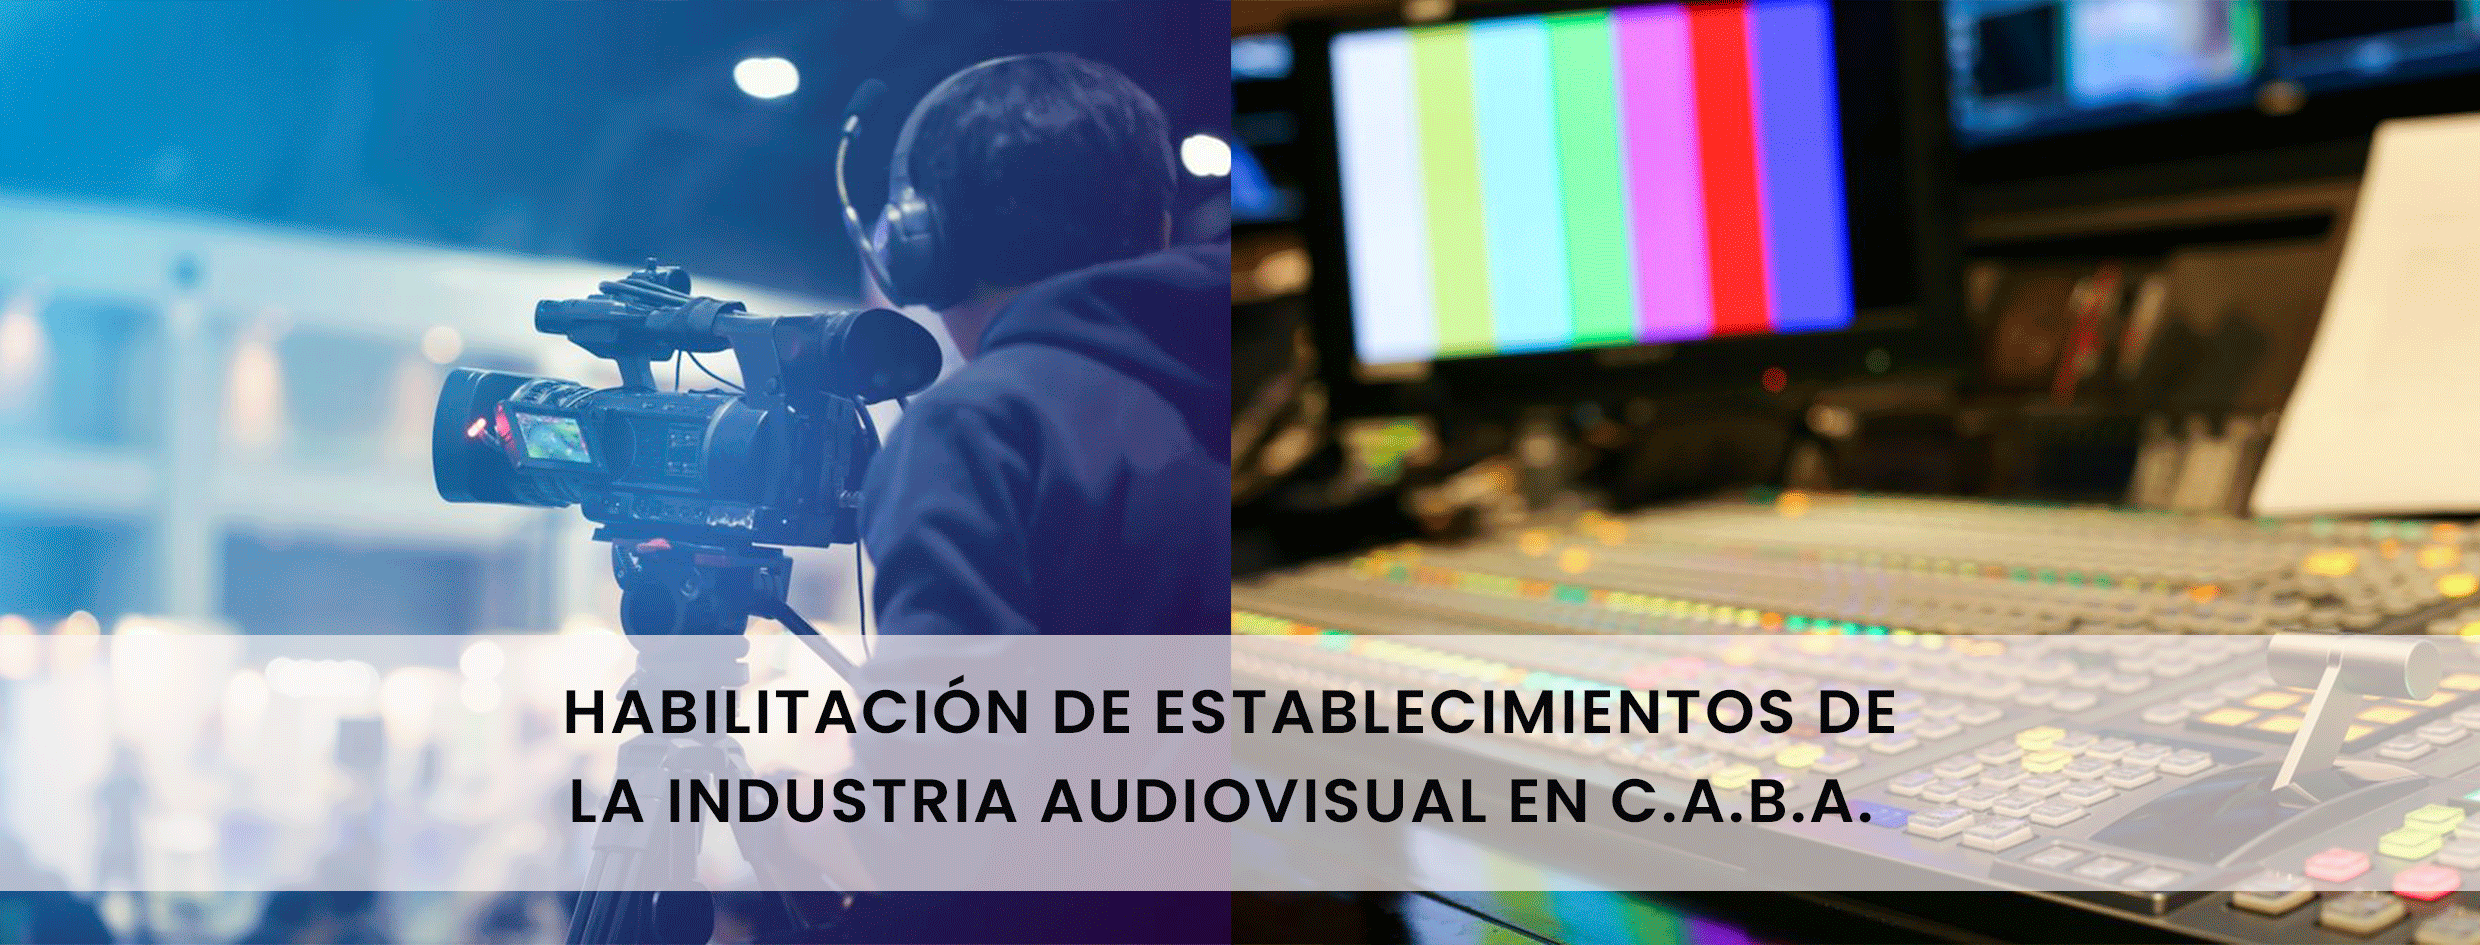 Habilitación de establecimientos de la industria Audiovisual en C.A.B.A.